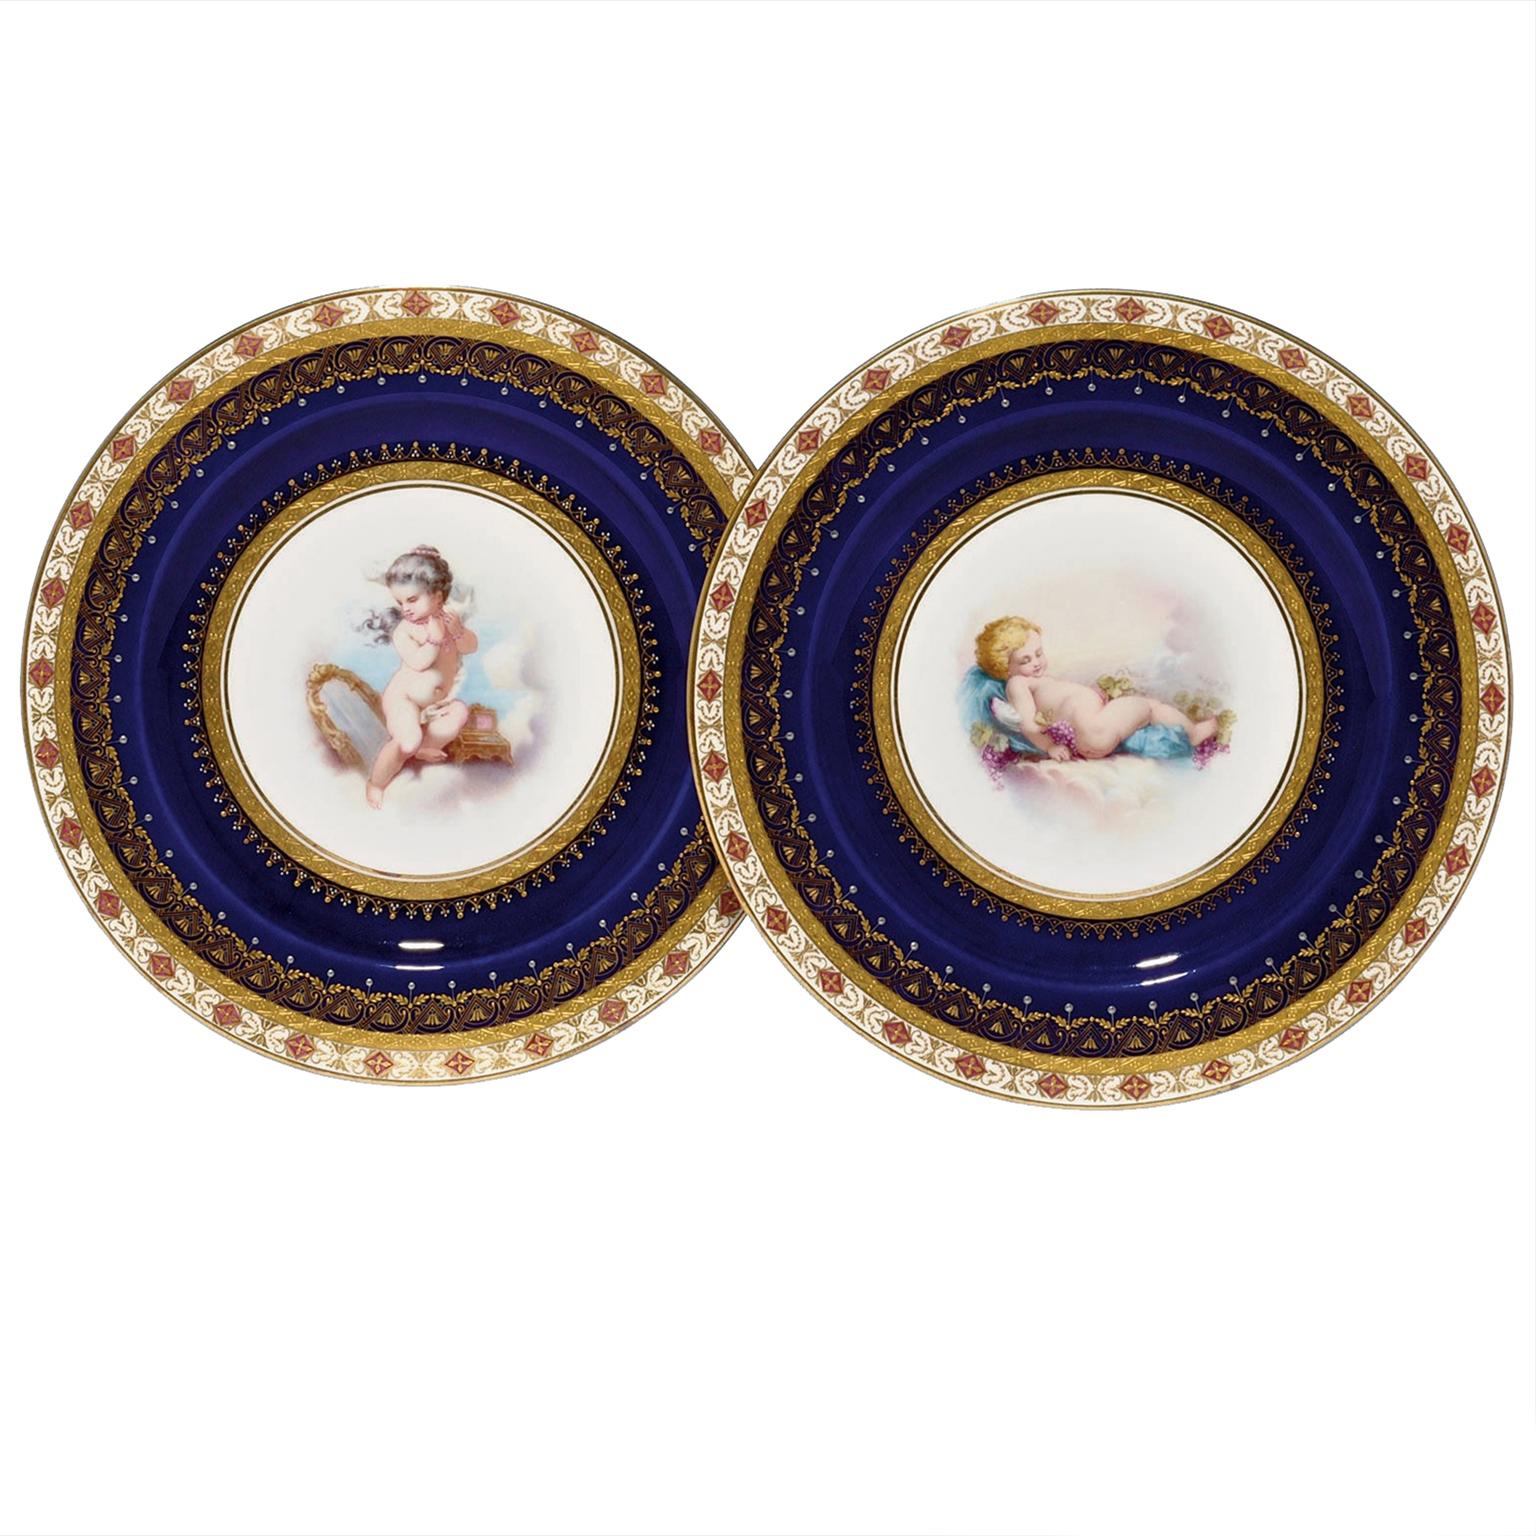 Paire d'assiettes en porcelaine représentant un putto en train de jouer par Minton, datée de 1881